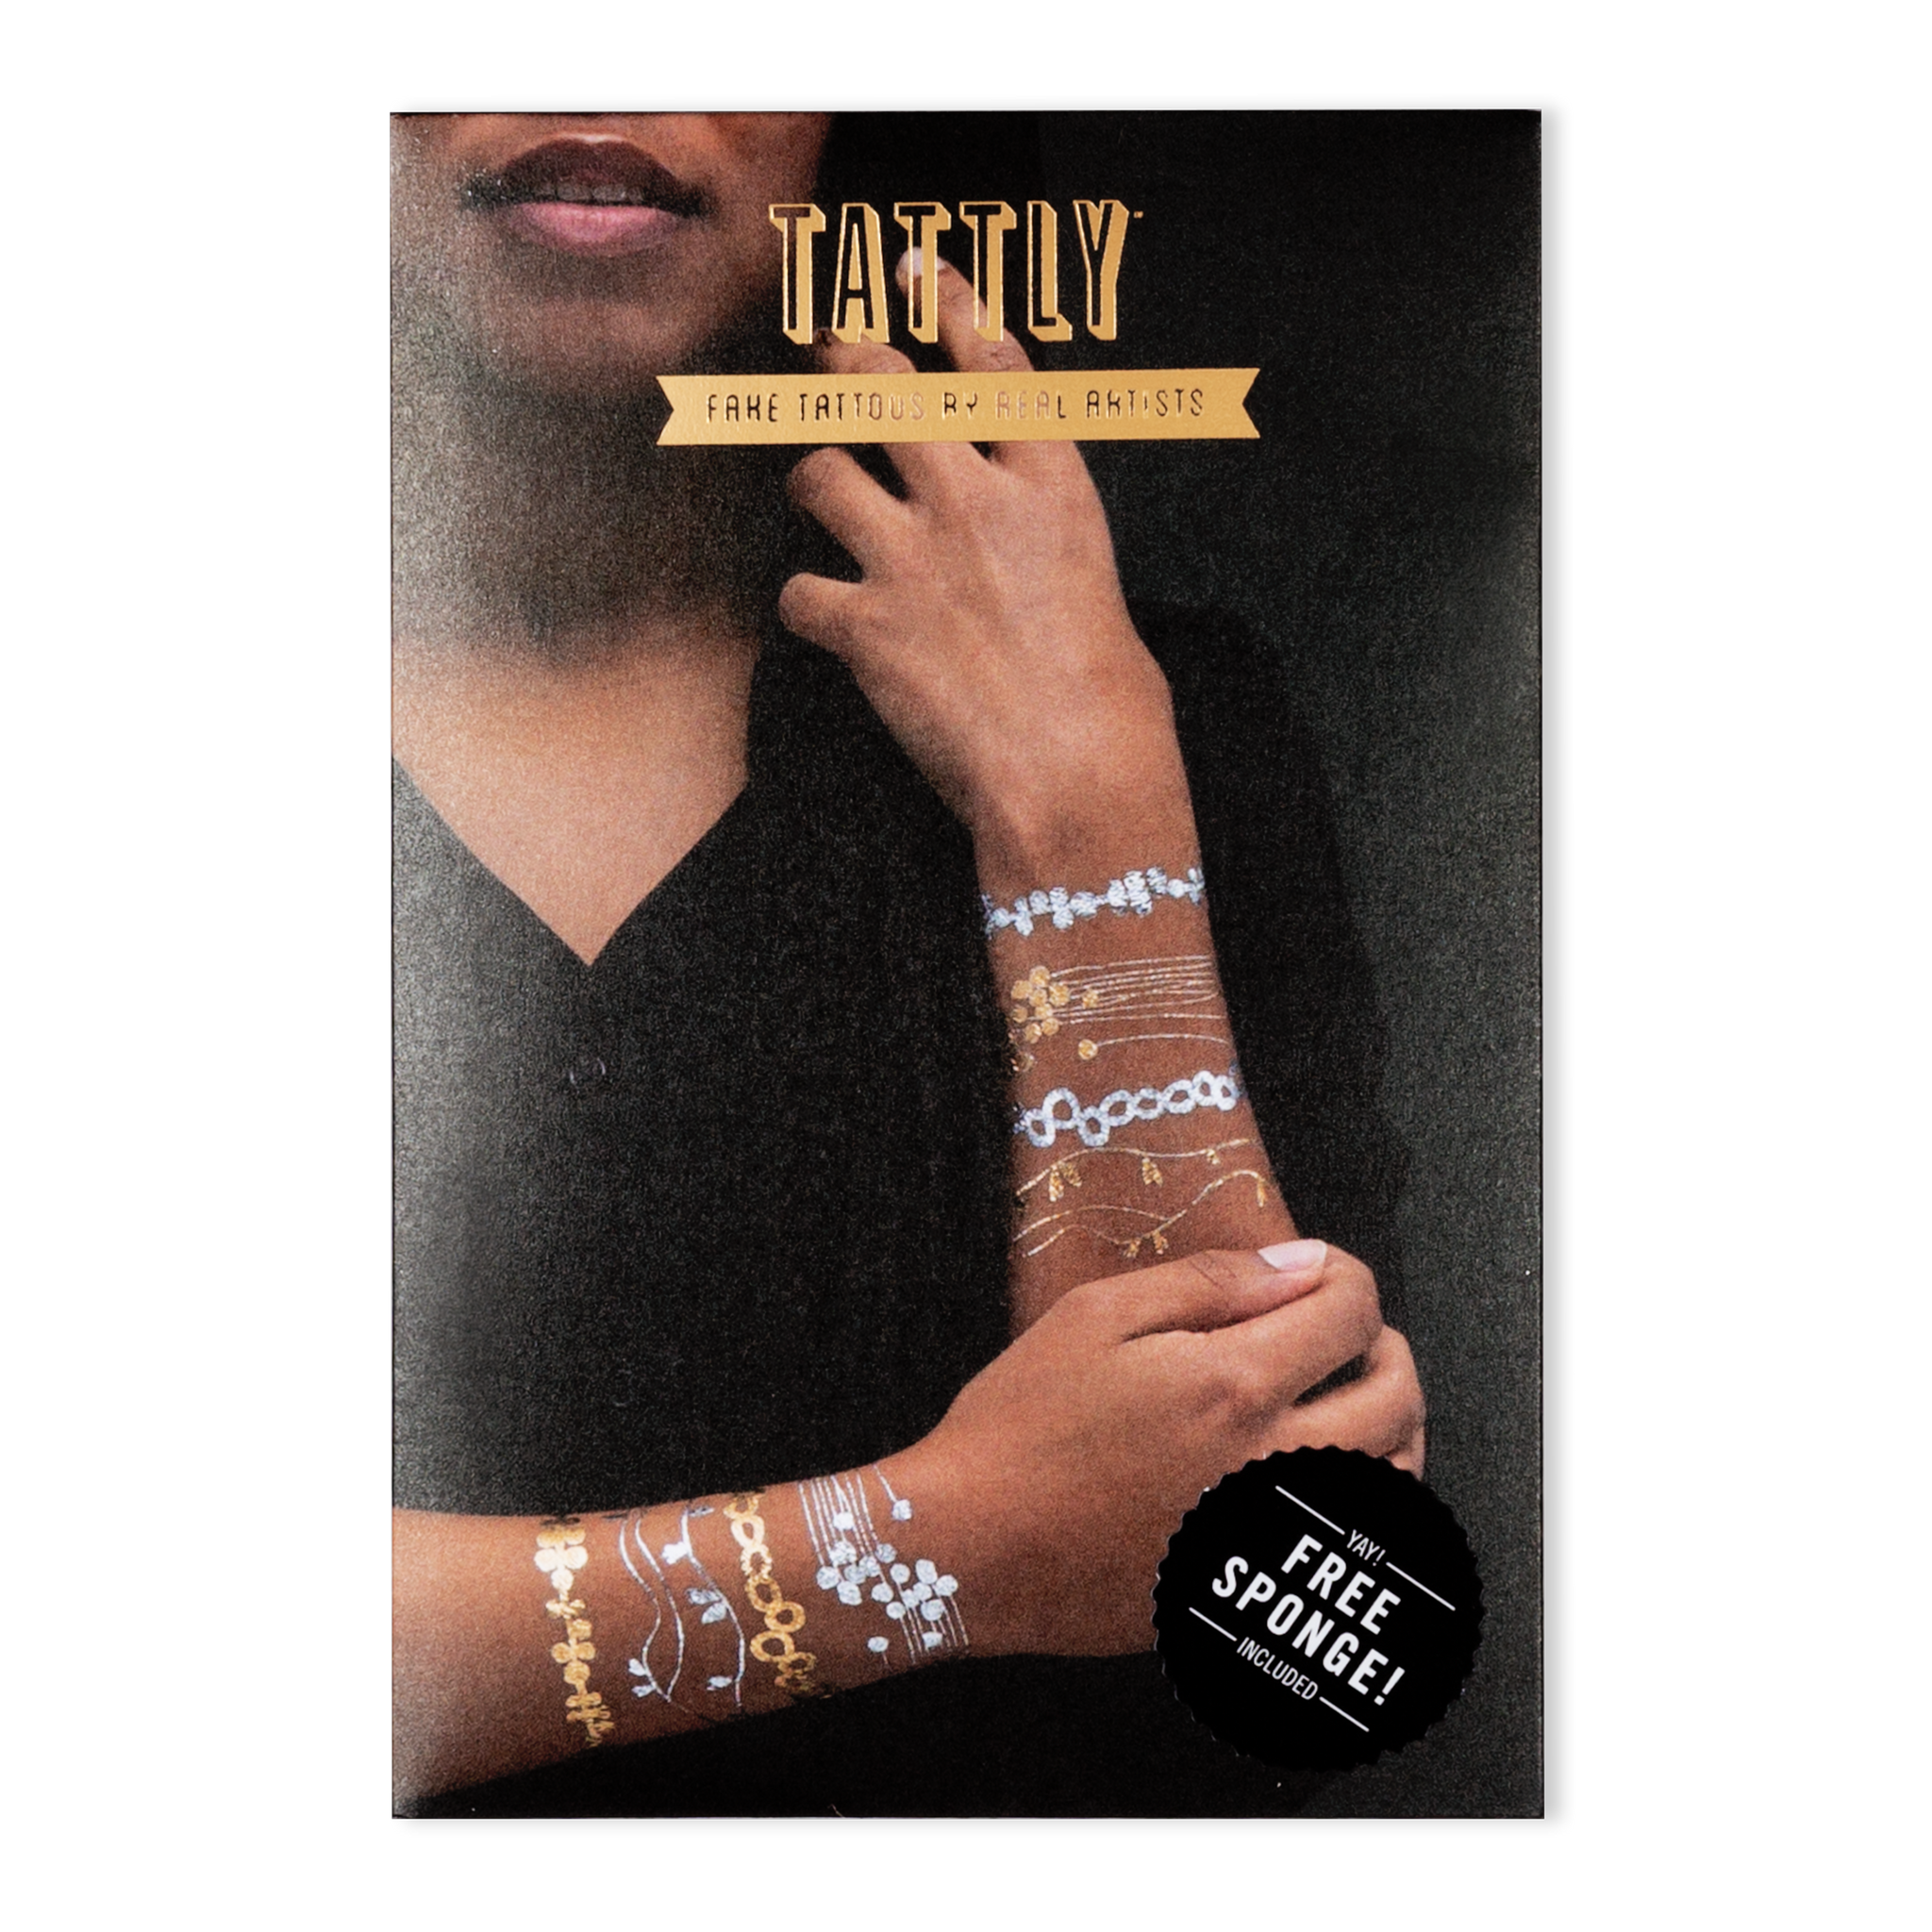 Chain Like Bracelet Tattoo Ideas | Wrist band tattoo, Wrist bracelet tattoo,  Arm band tattoo